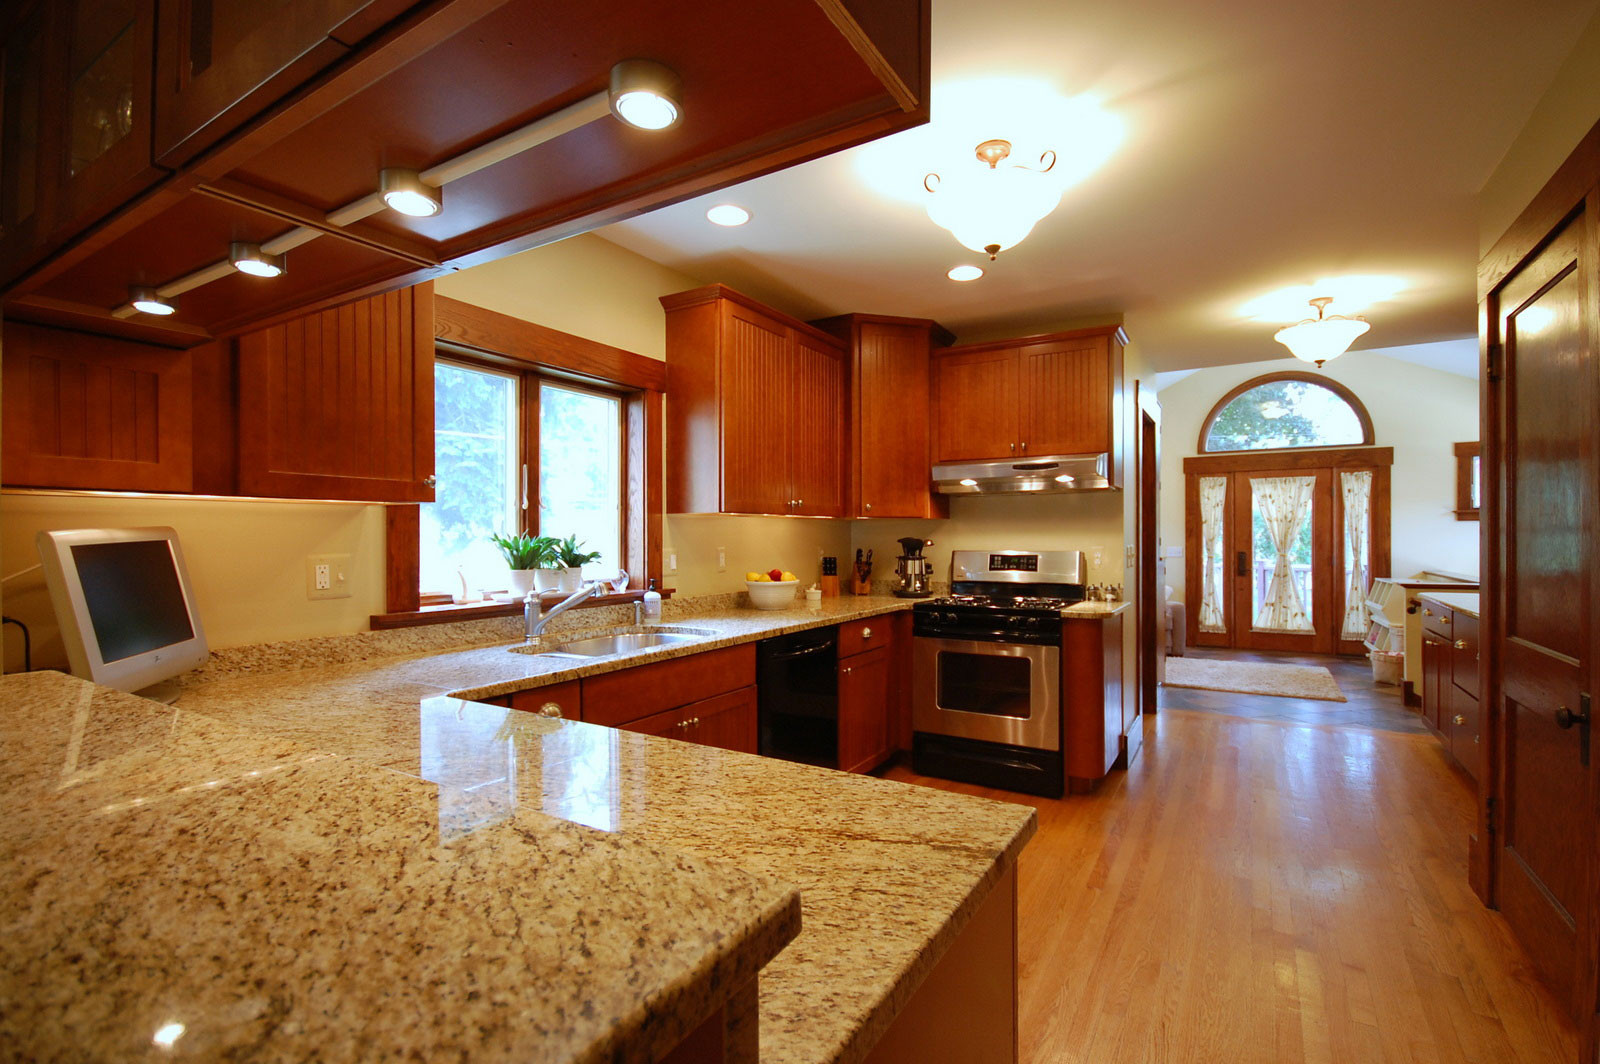 Kitchen Granite Countertop
 Granite Kitchen Countertops with Useful Durable Properties